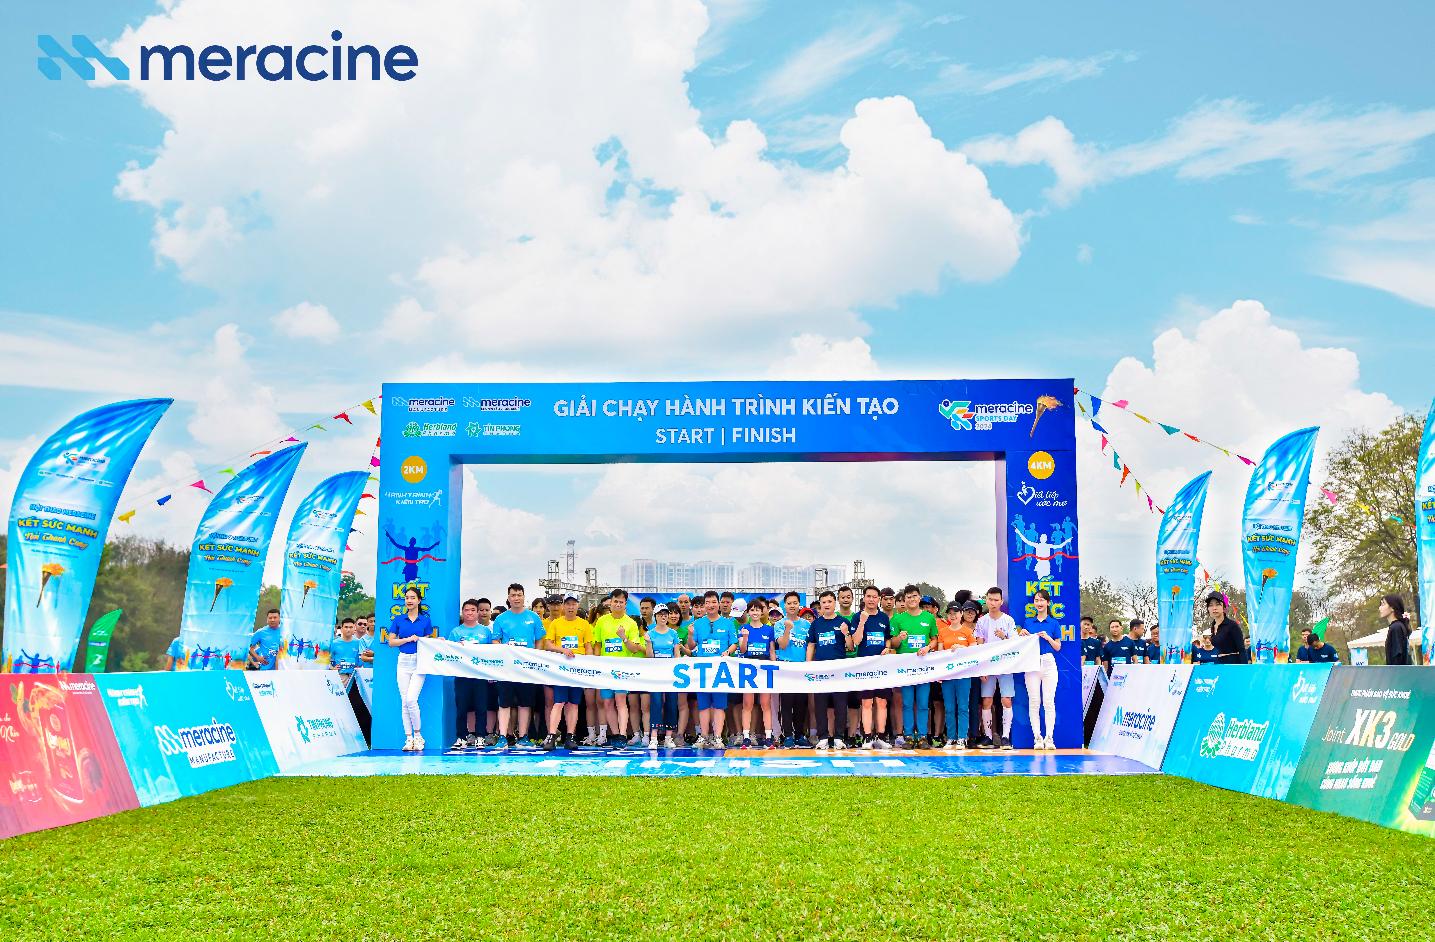 Dược phẩm Meracine tổ chức hoạt động thể thao gây quỹ từ thiện cho trẻ em- Ảnh 2.